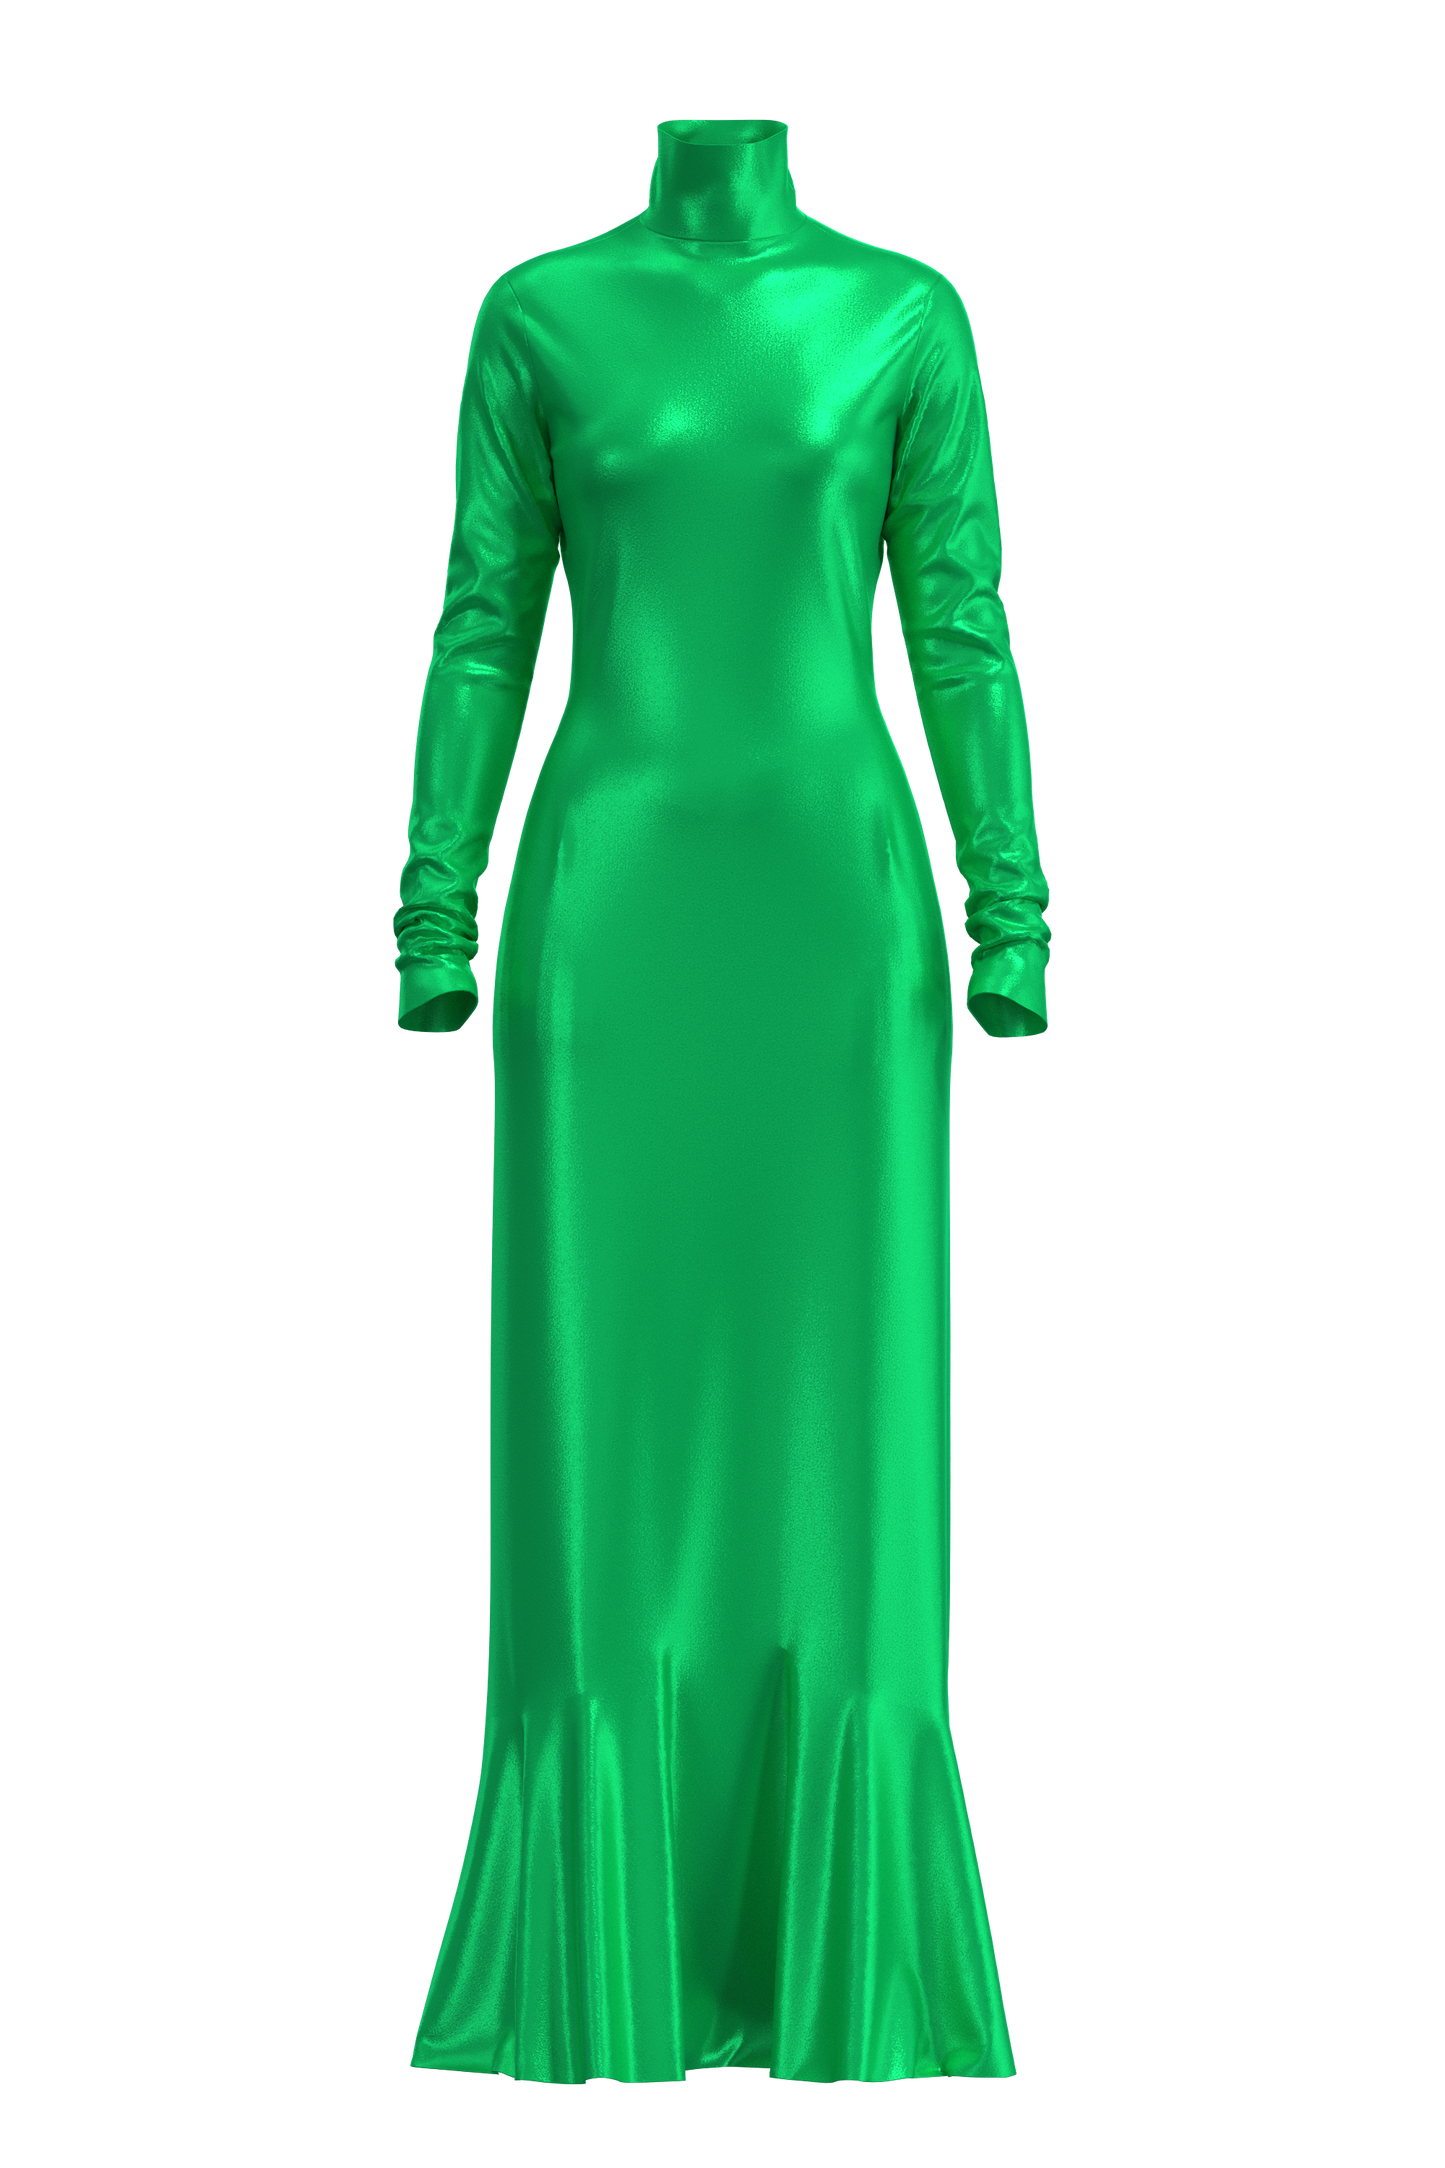  | Full Length Satin Dress Green